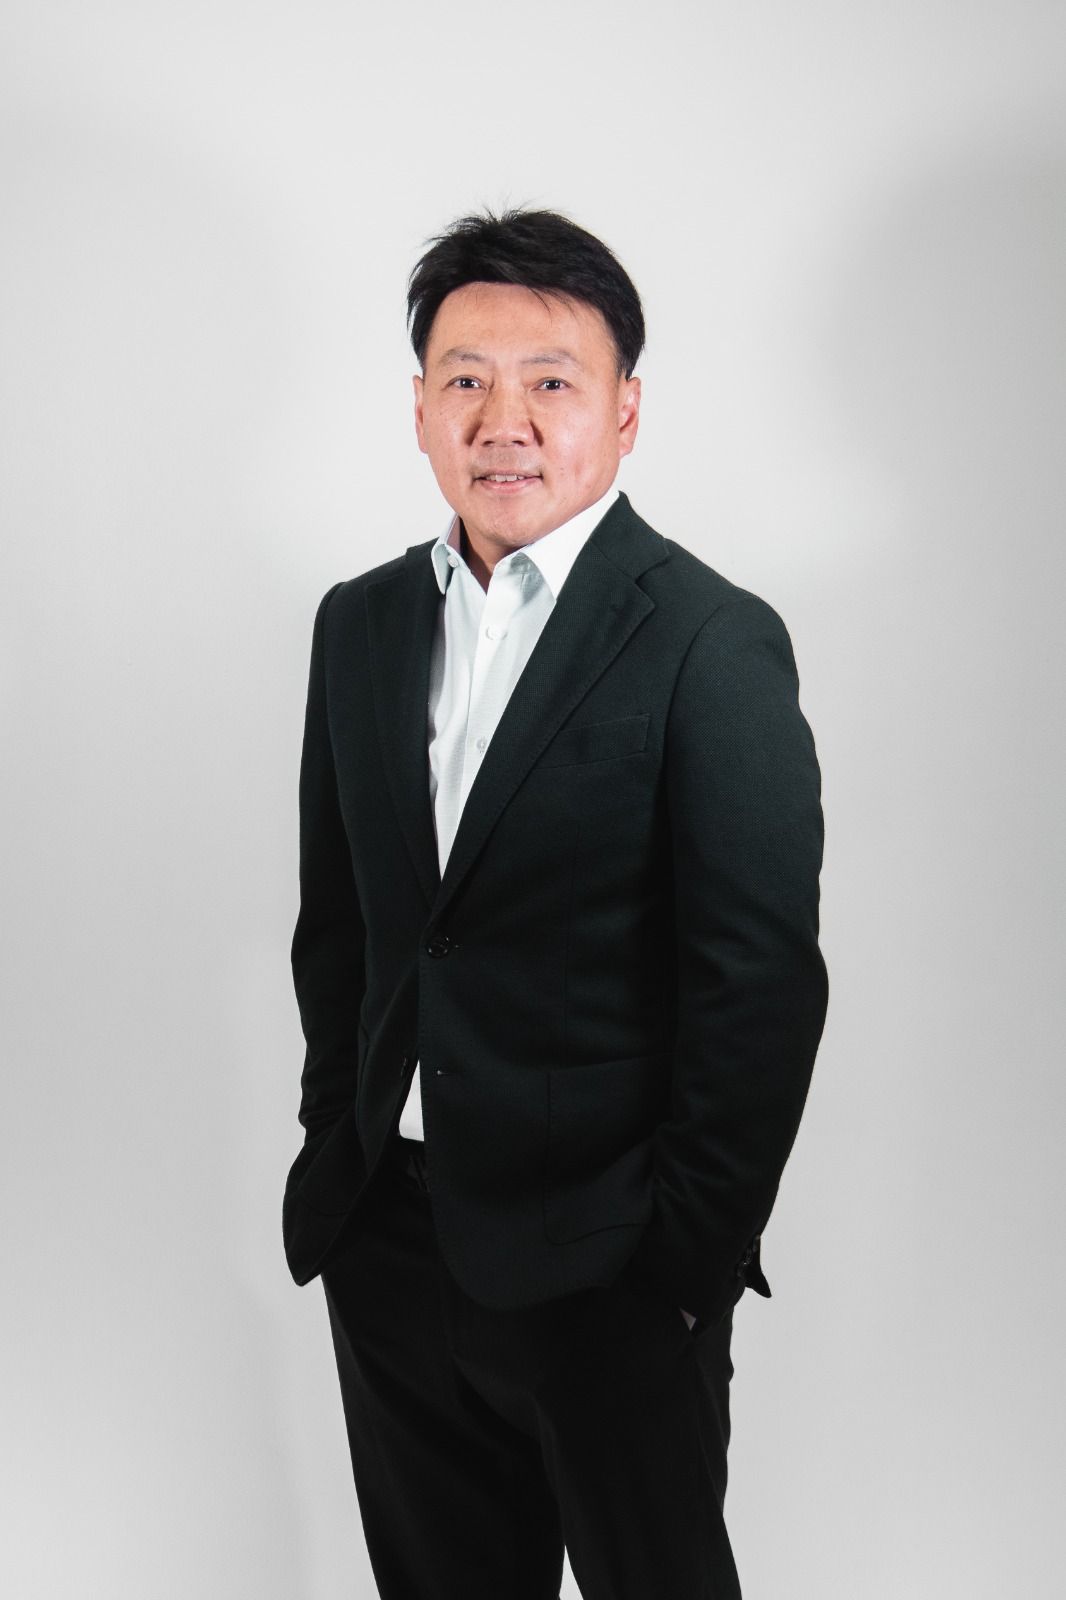 Mr. Kitti Chungsawanant, direktør for KJTN Engineering